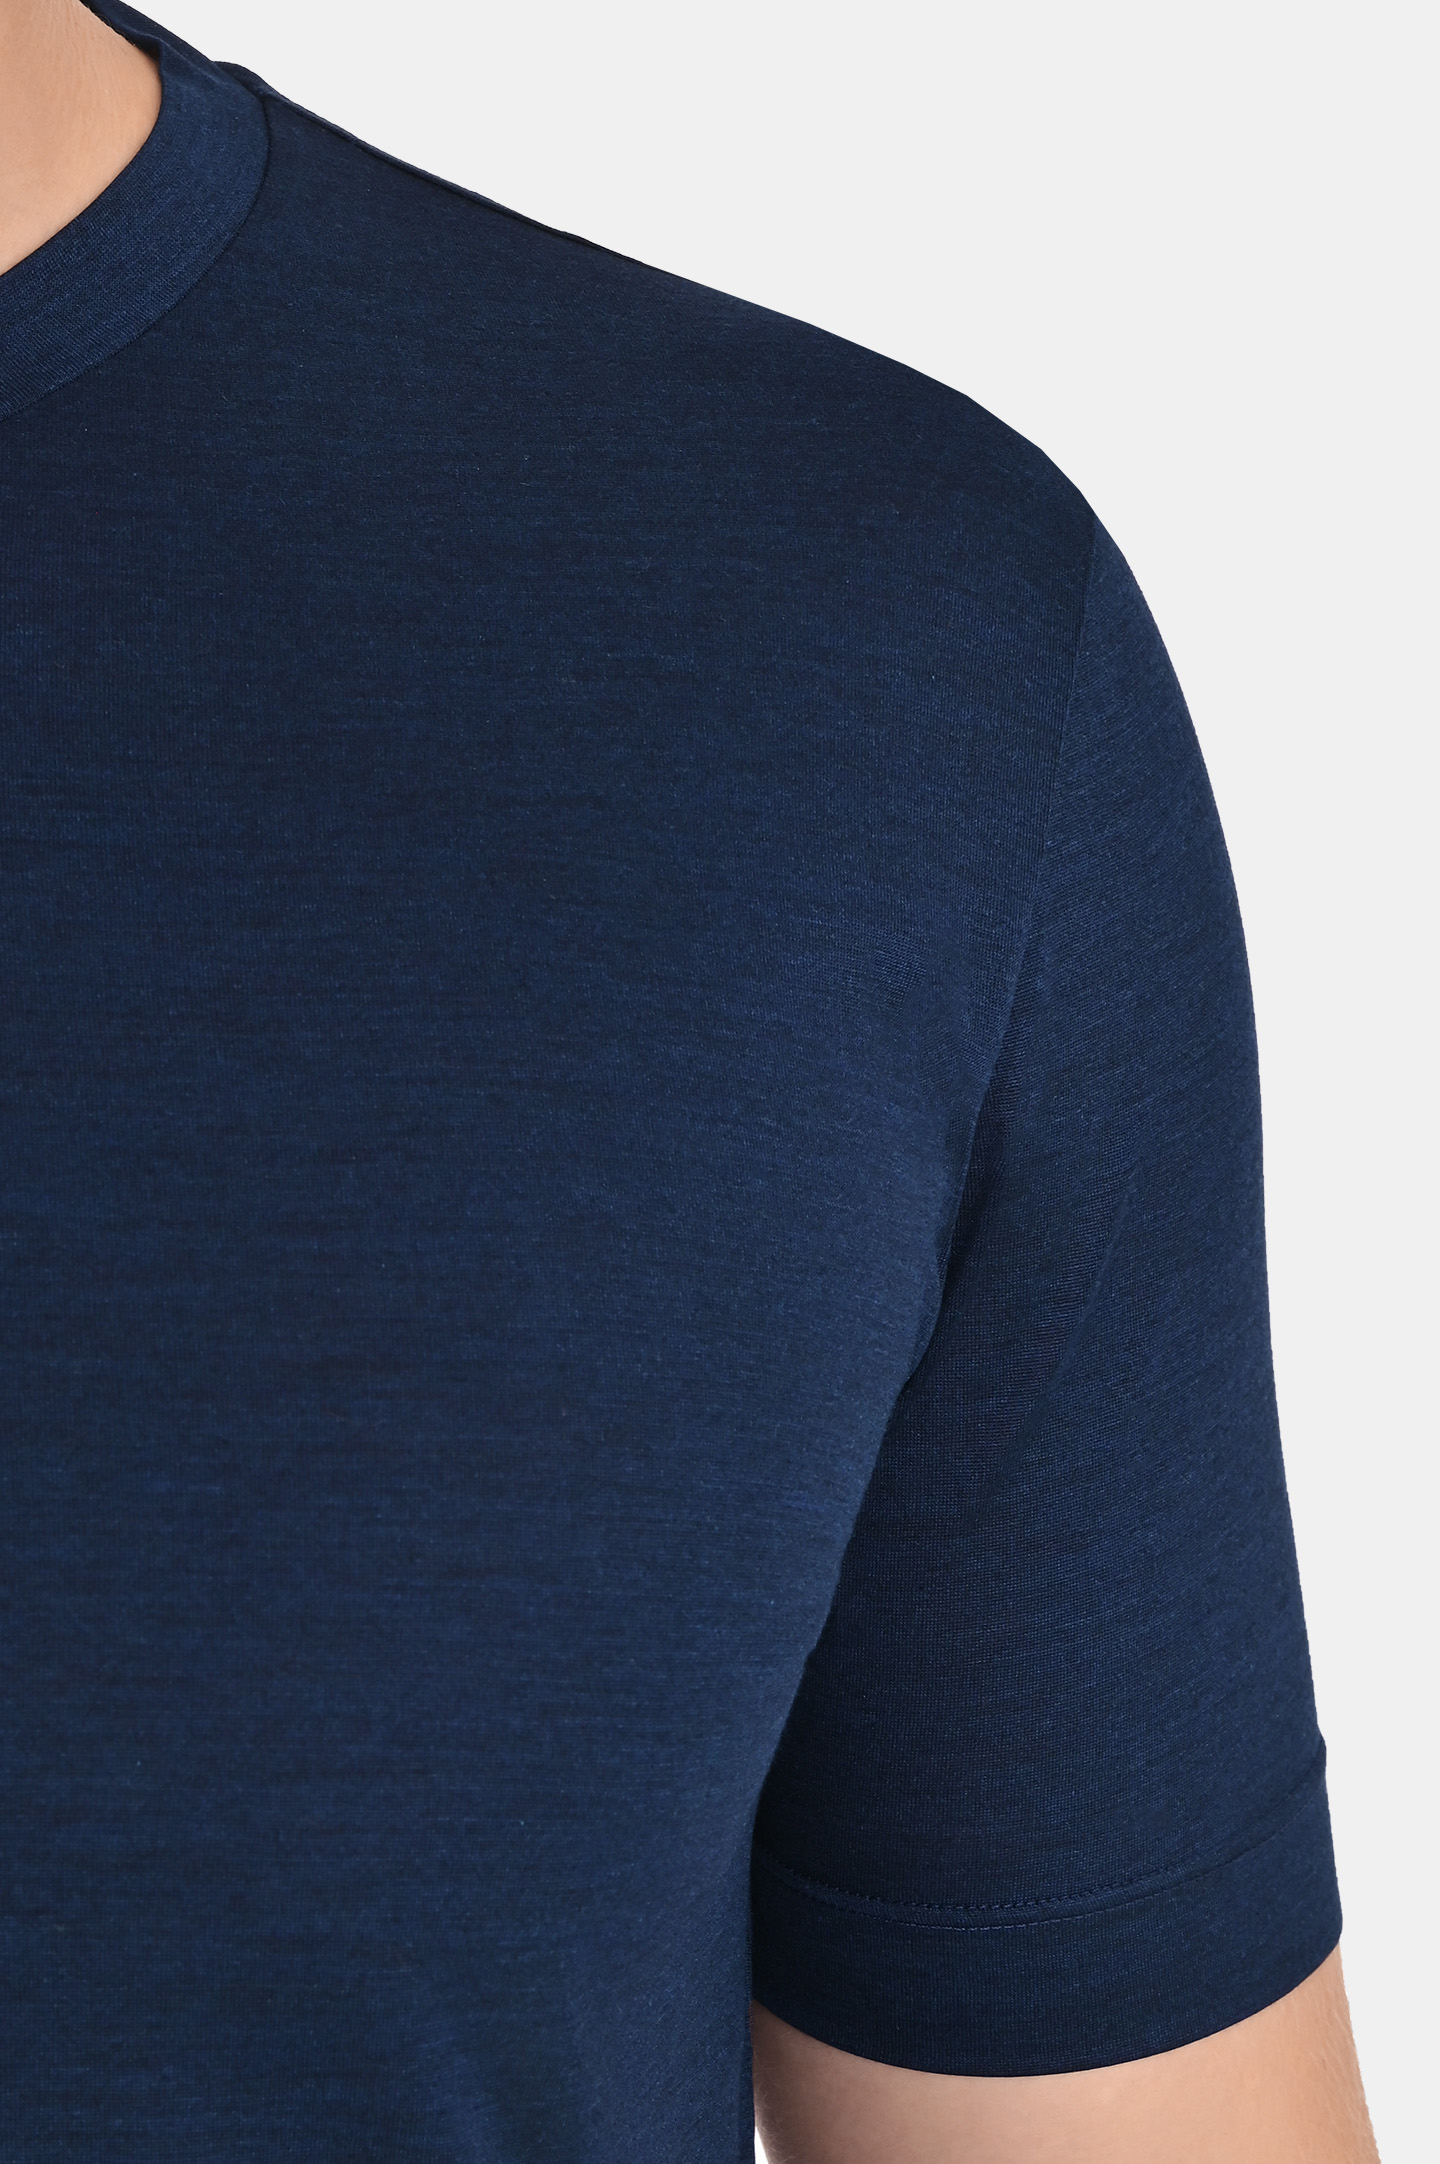 Шелковая футболка CANALI MX01184 T0810/1, цвет: Темно-синий, Мужской